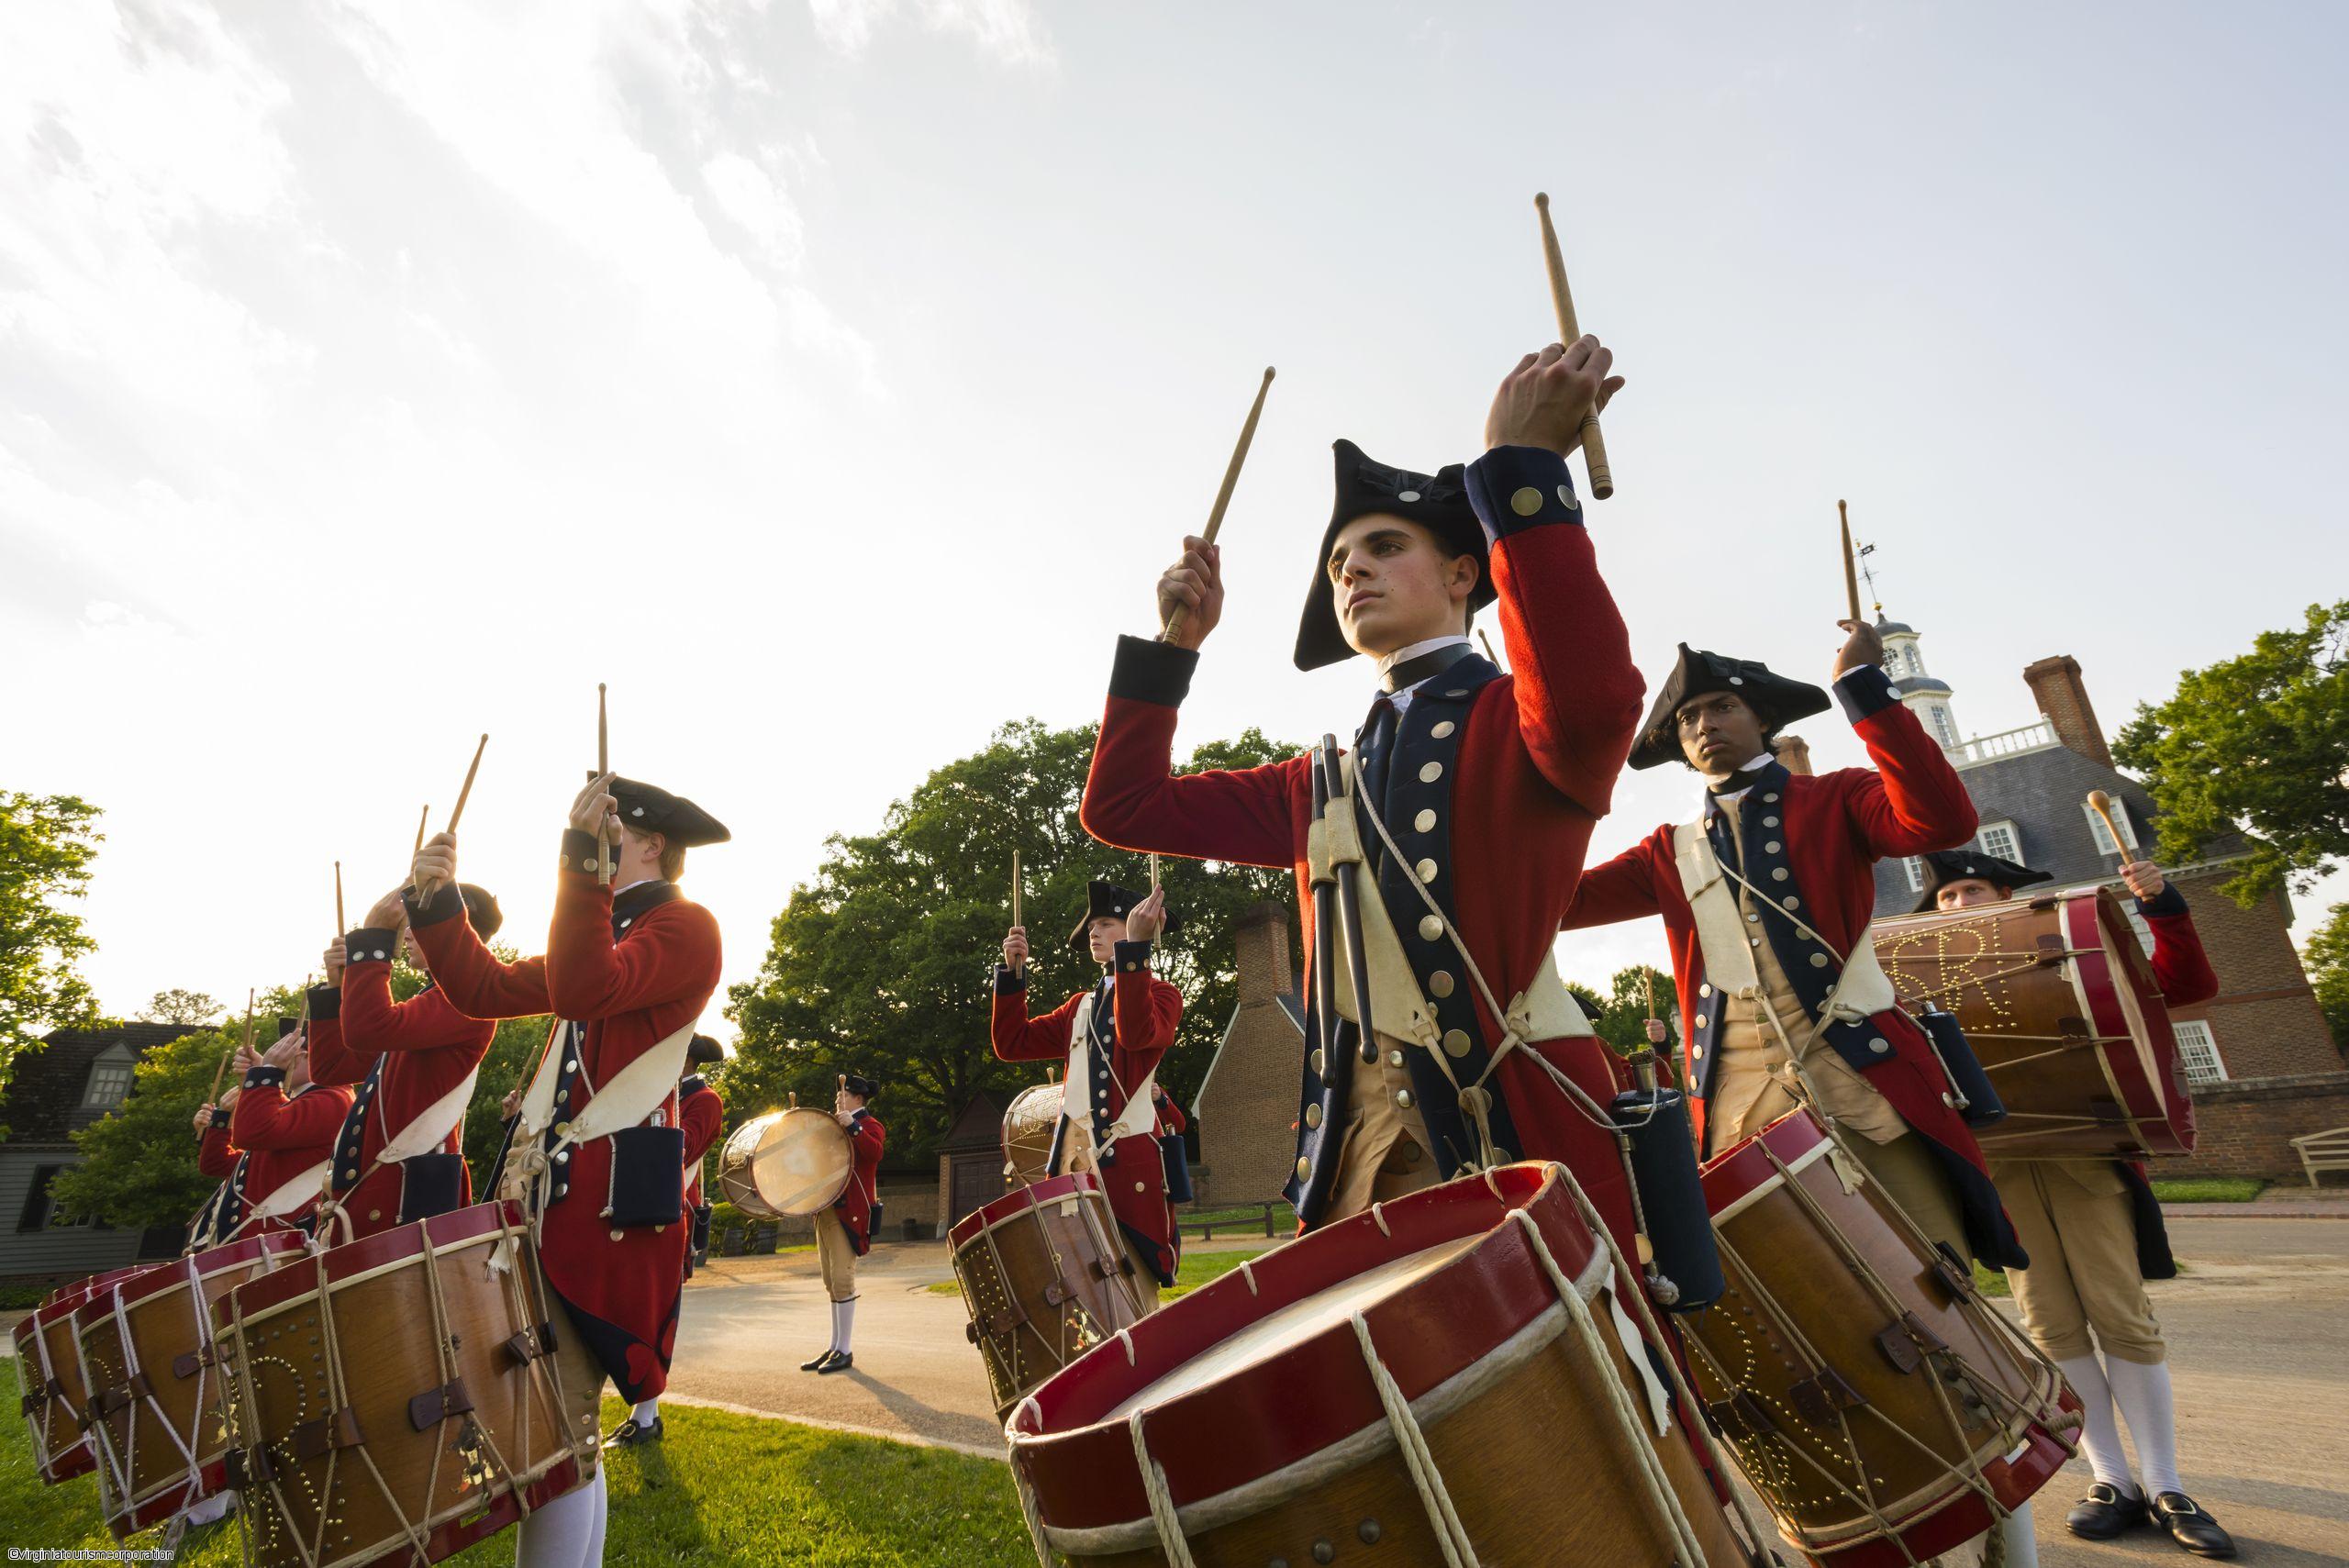 Défilé d'un orchestre en tenue militaire coloniale et qui joue du tambour dans les rues de Williamsburg